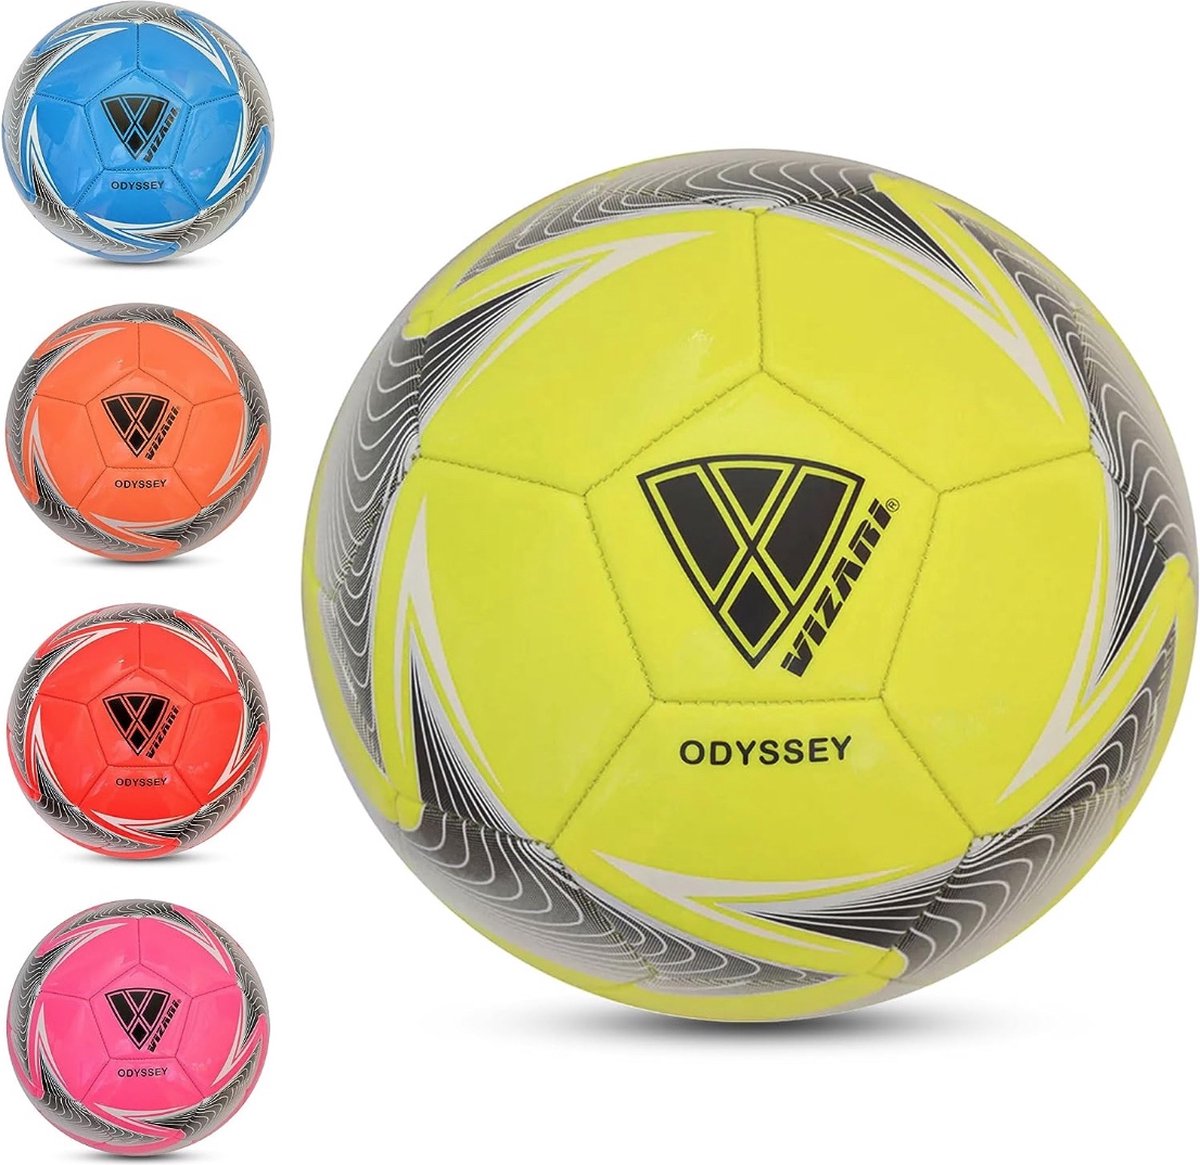 VIZARI ODYSSEY Voetbal | Geel | Maat 5 | Unieke Grafische Ontwerpen | Voetballen voor Kinderen & Volwassenen | Verkrijgbaar in 4 Kleuren